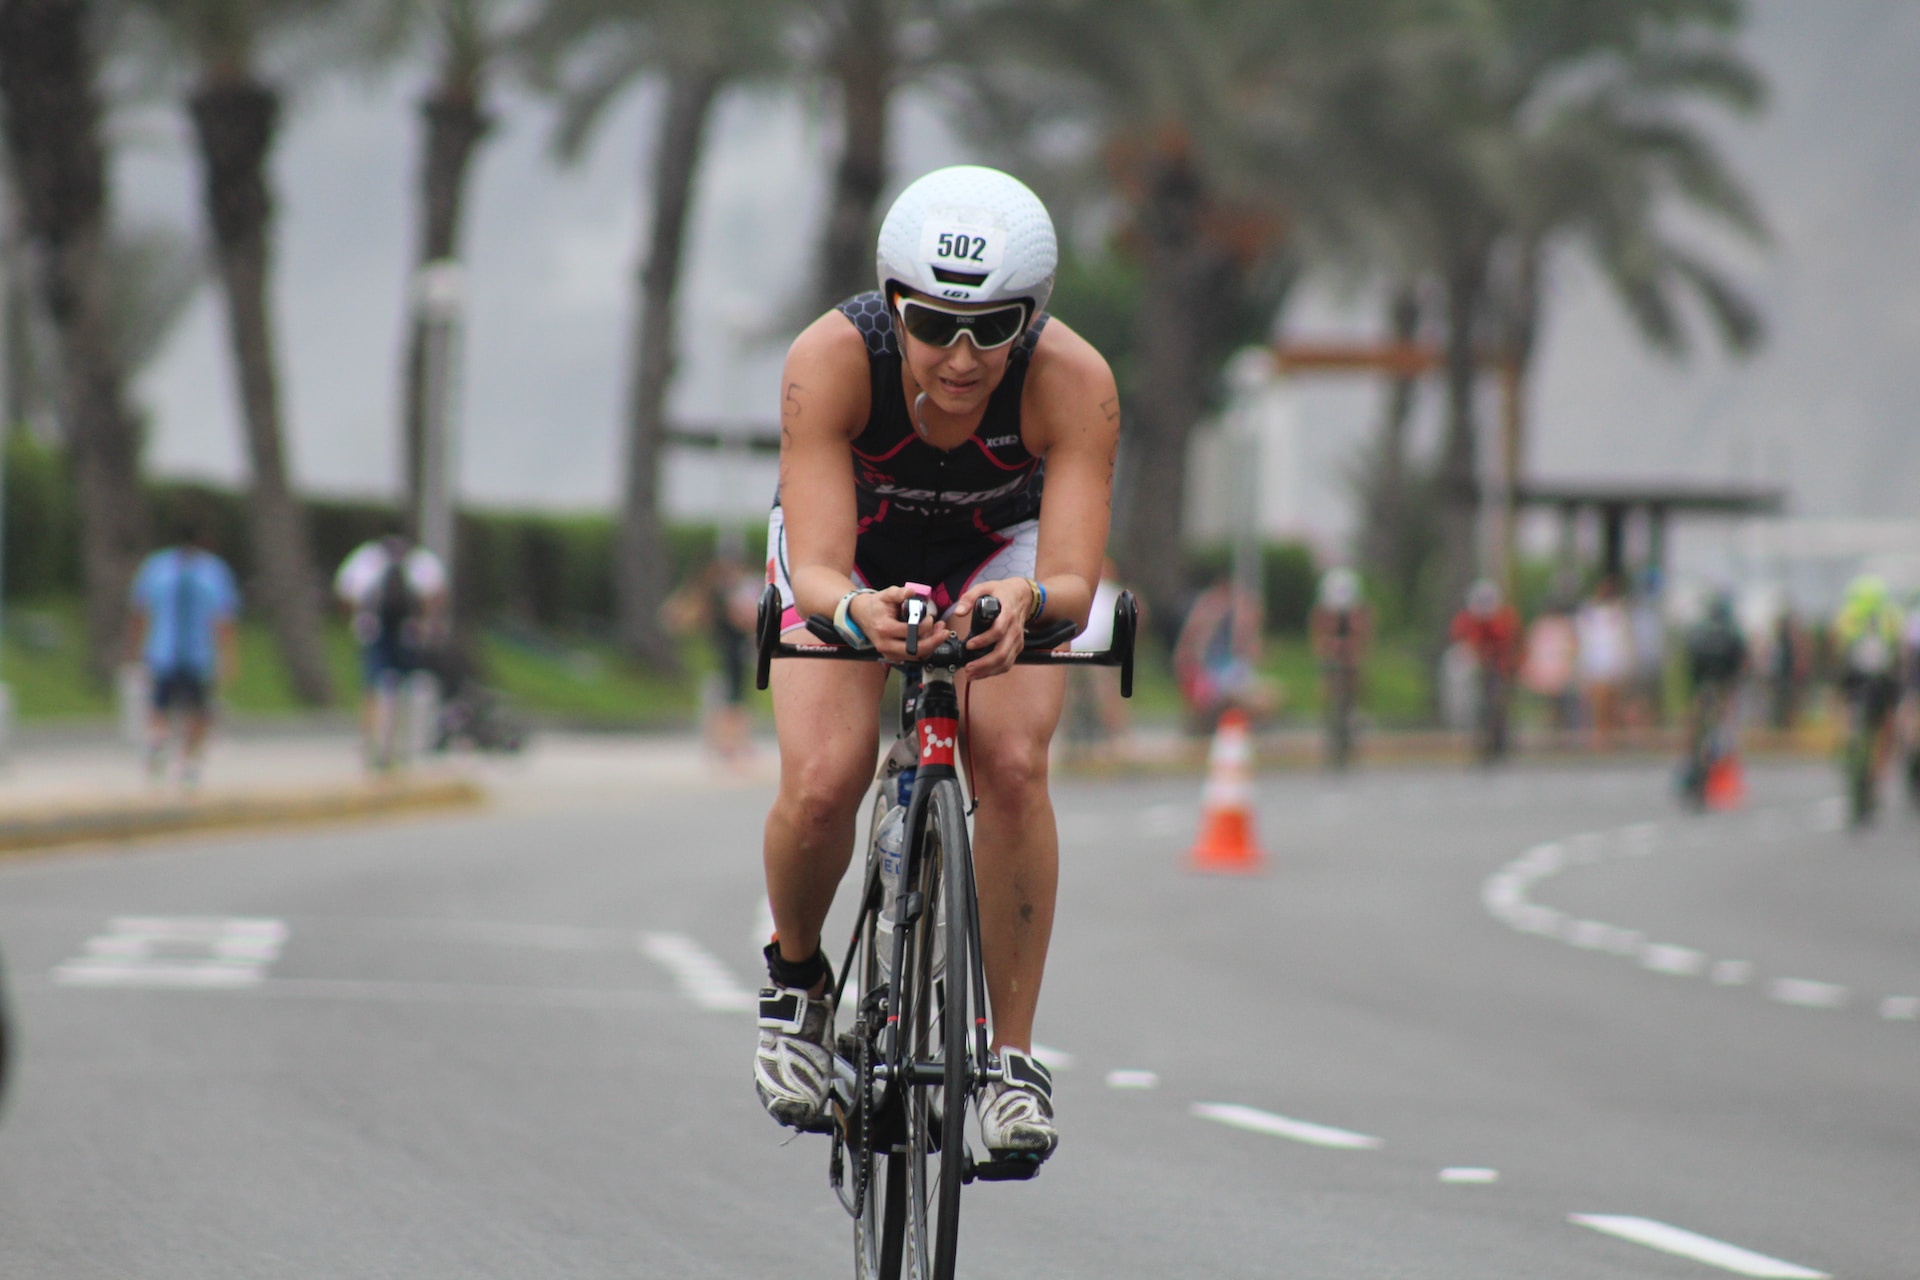 Athlete performs a bike triathlon on the ironman sprint distances